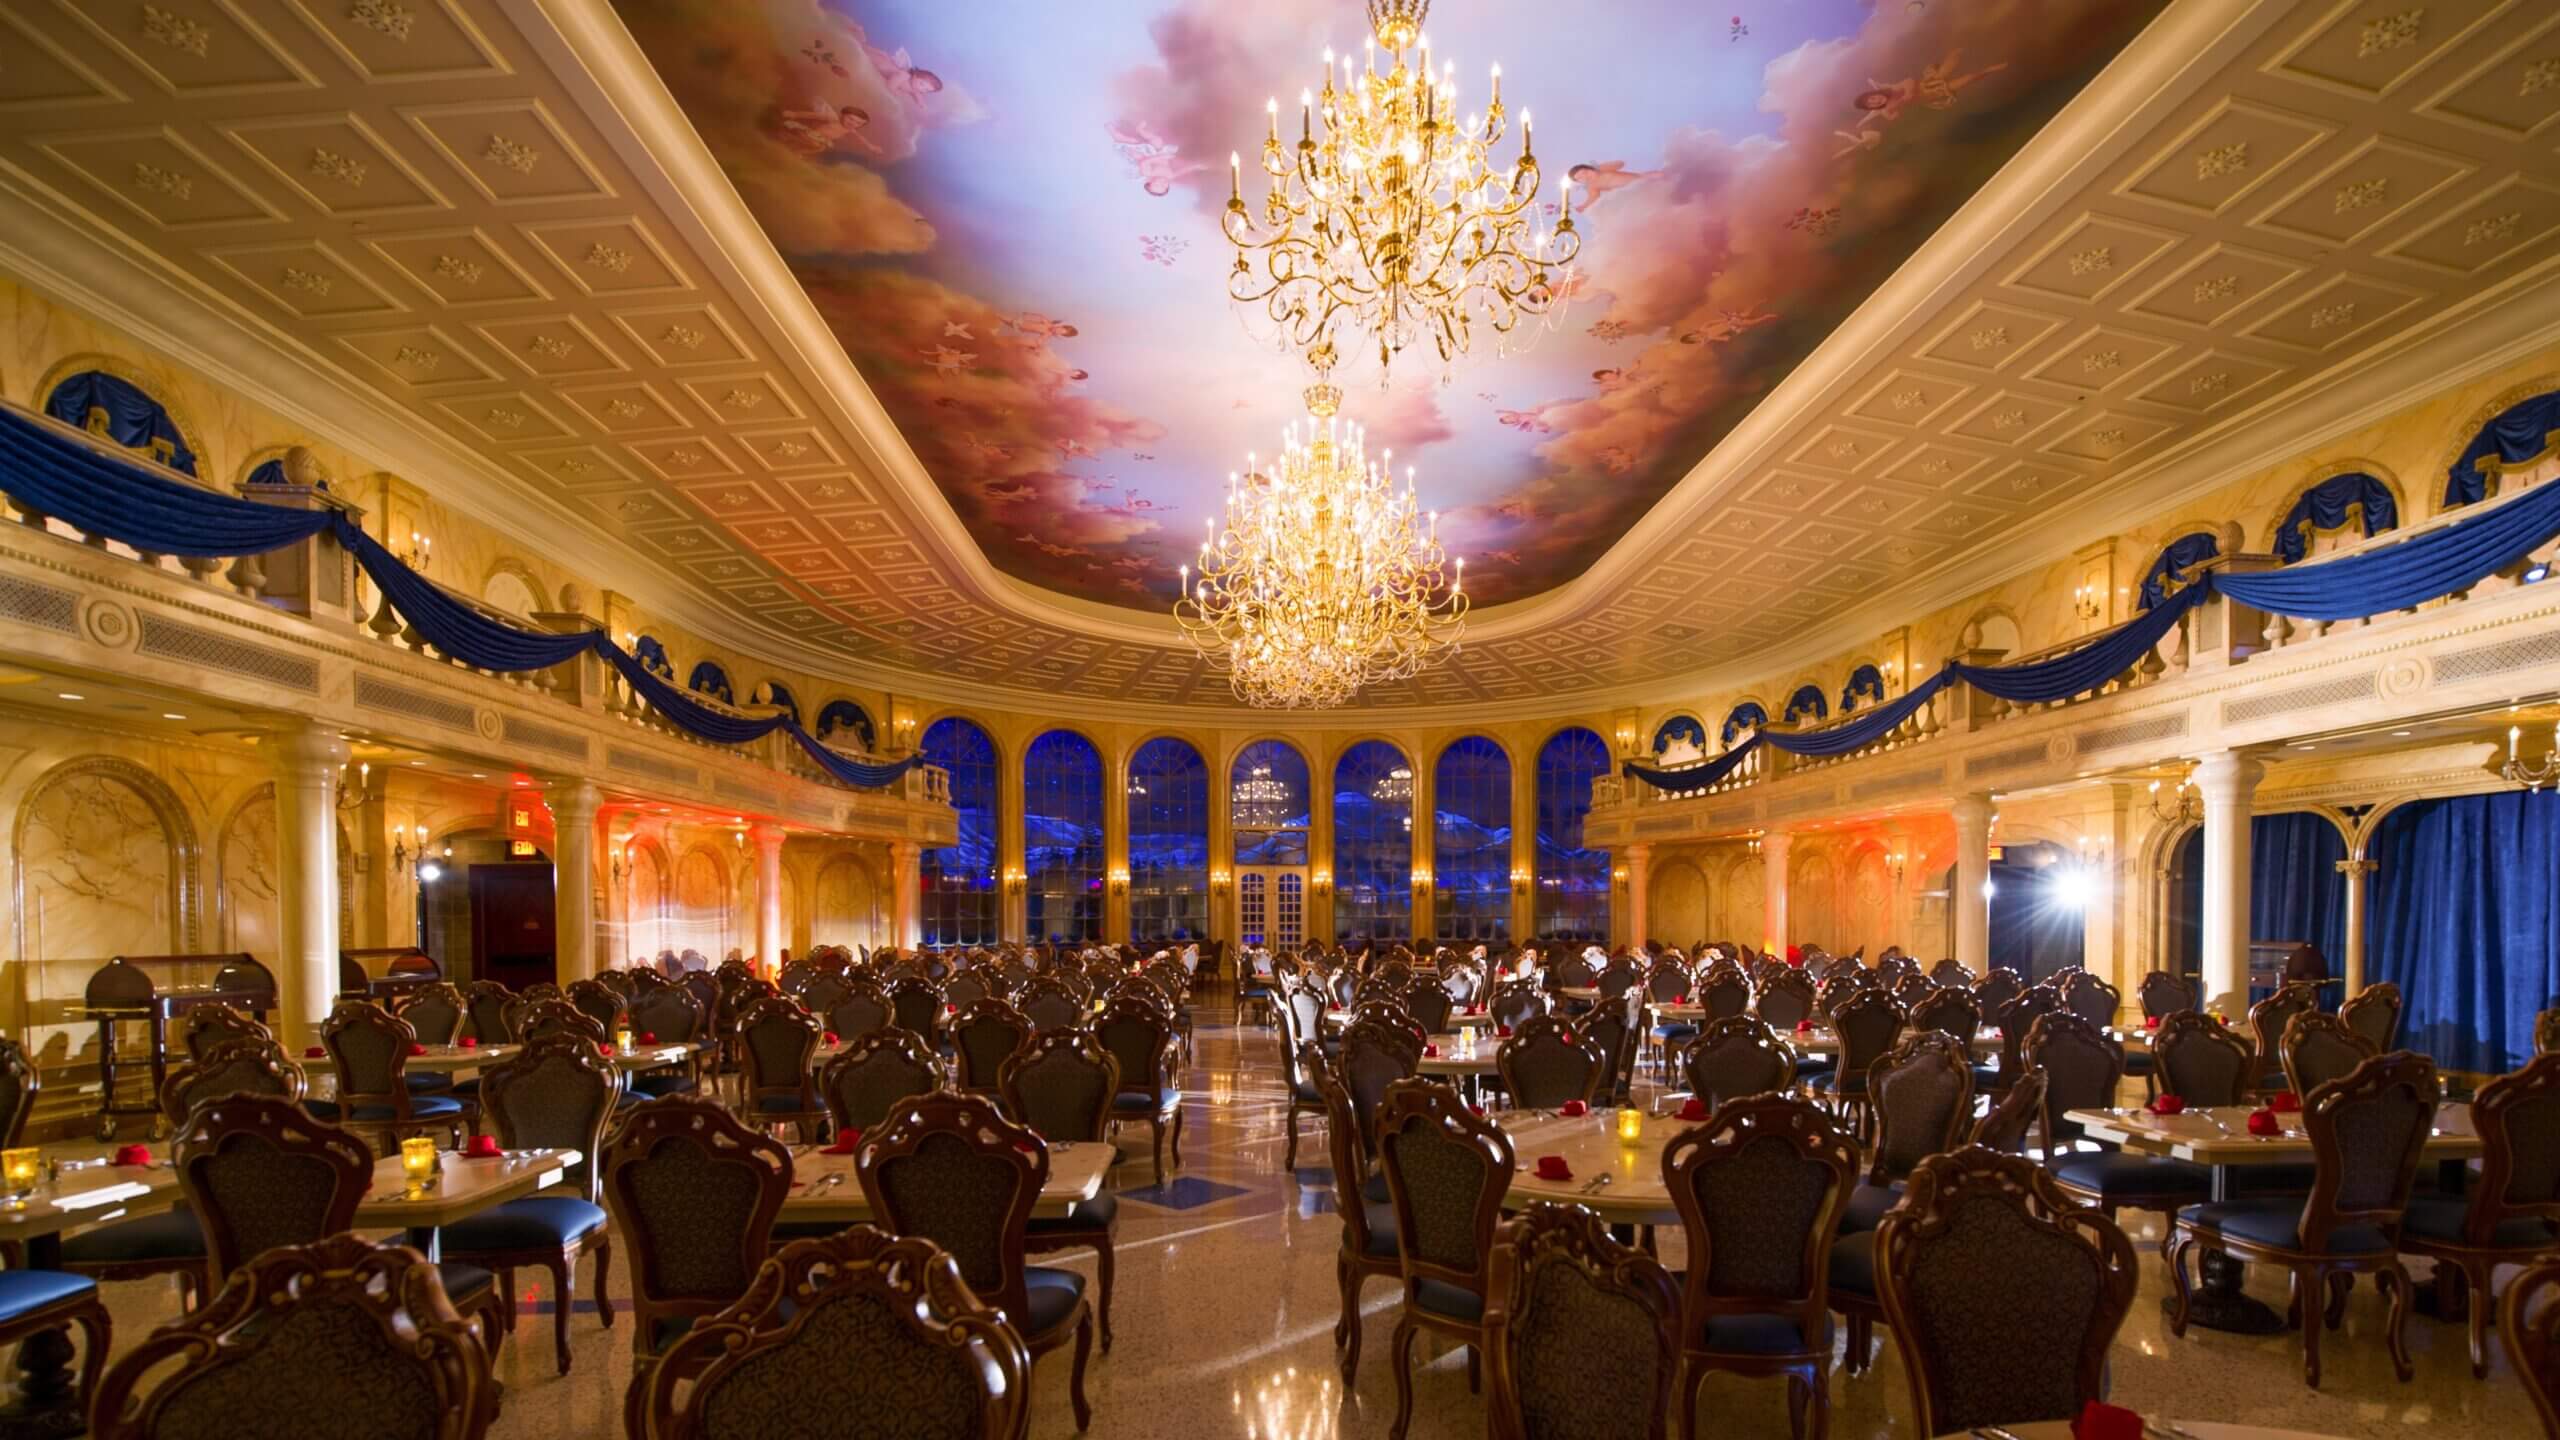 be-our-guest-restaurant-magic-kingdom-Walt-Disney-World